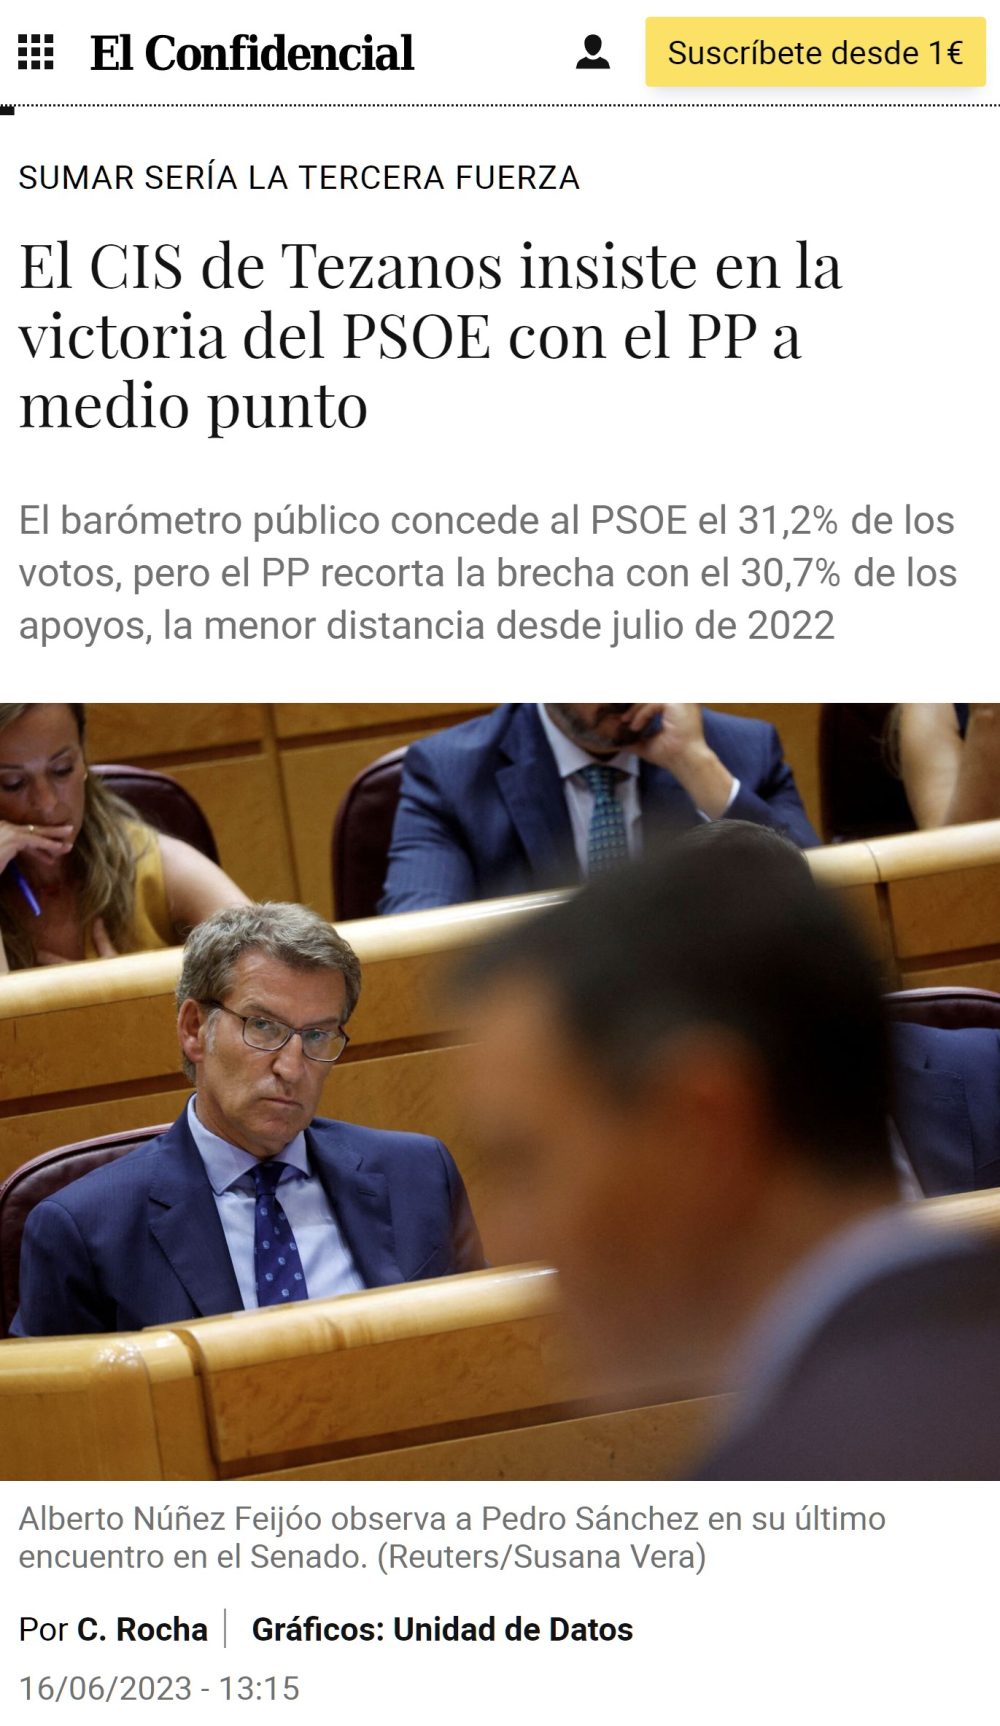 "Contra todo pronóstico" el CIS da la victoria... AL PSOE xd